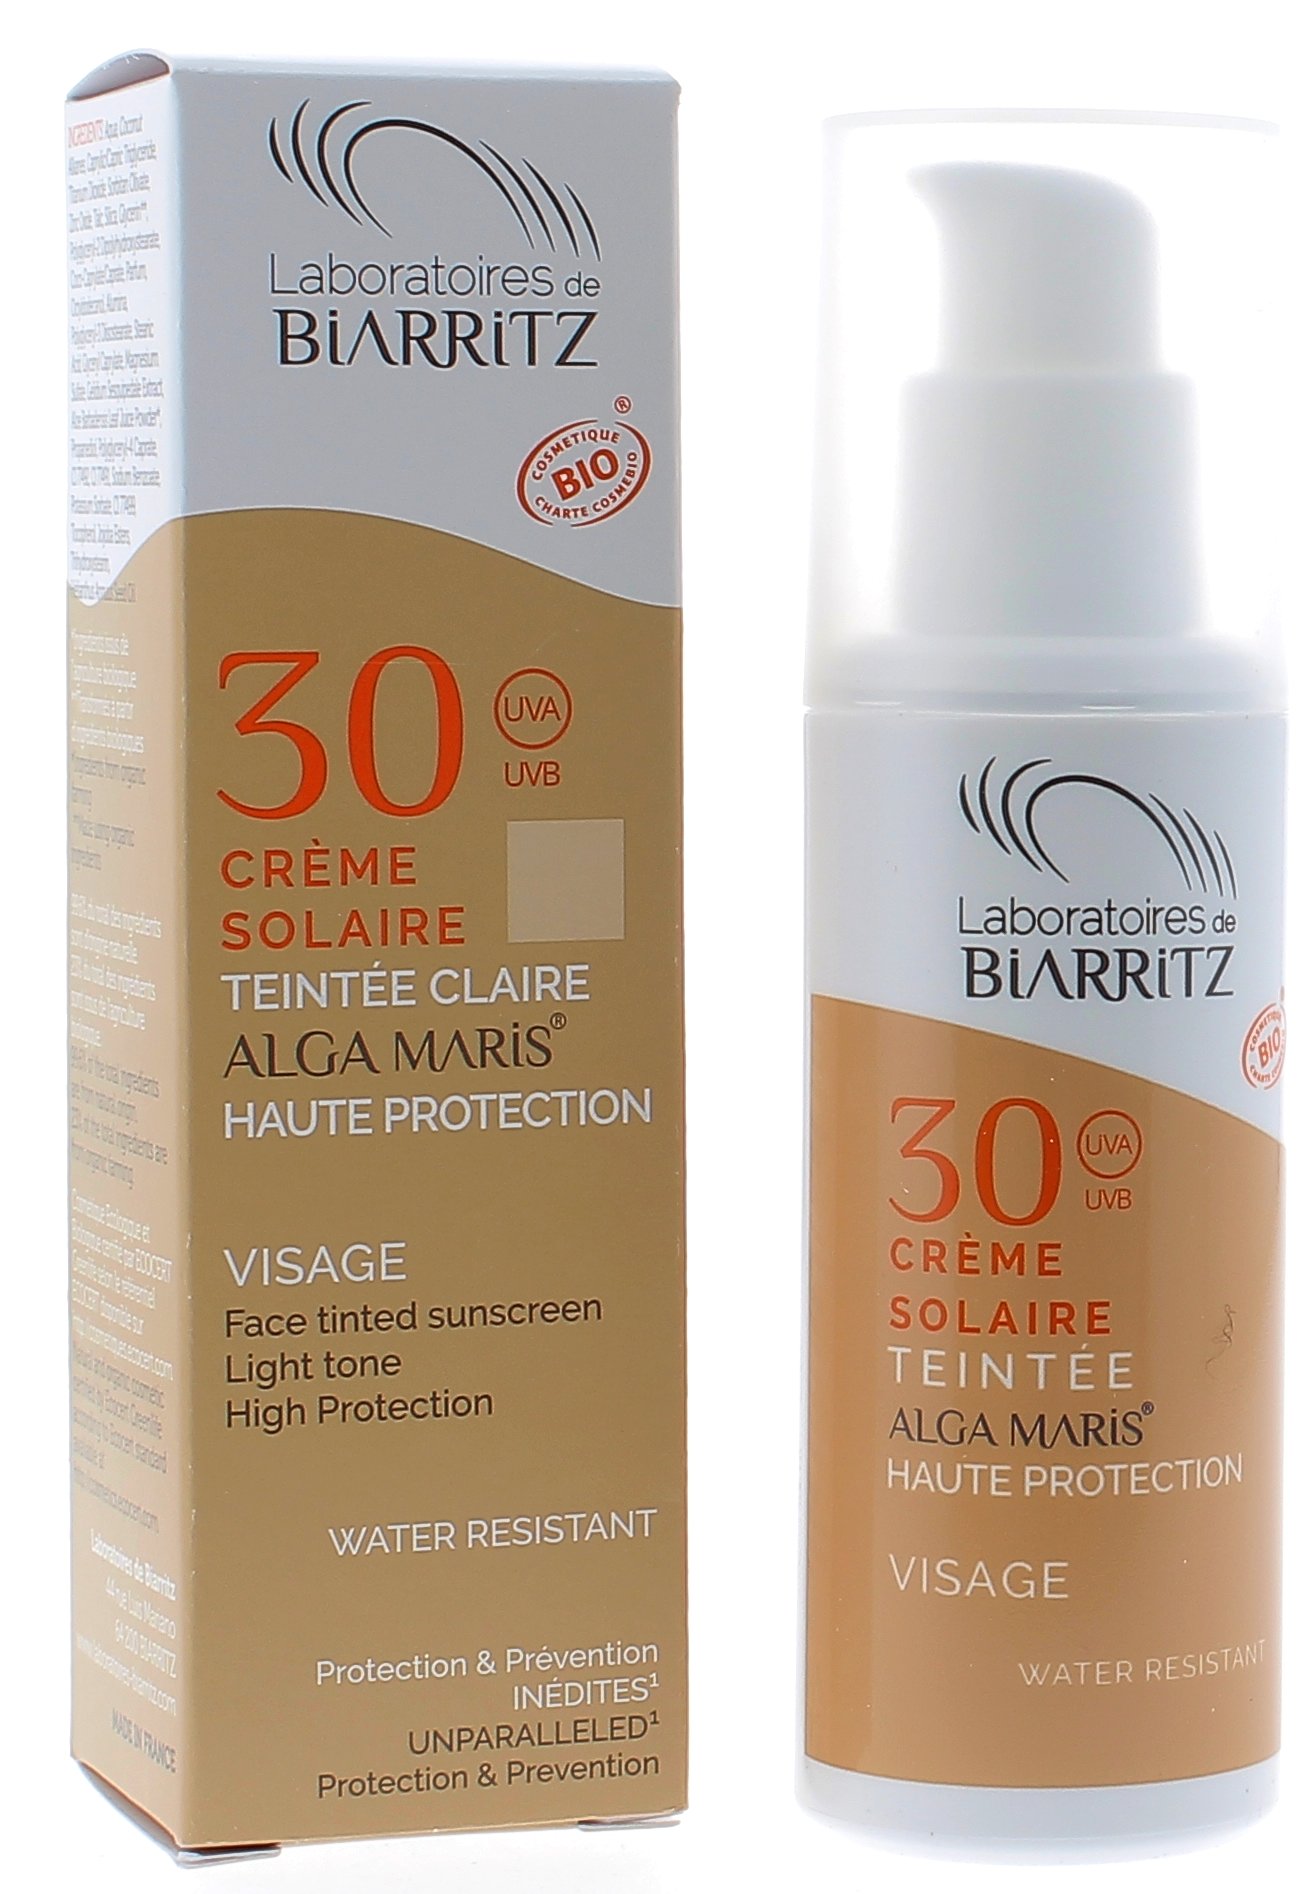 Crème solaire teintée claire spf 30 Alga maris Biarritz - tube de 50 ml